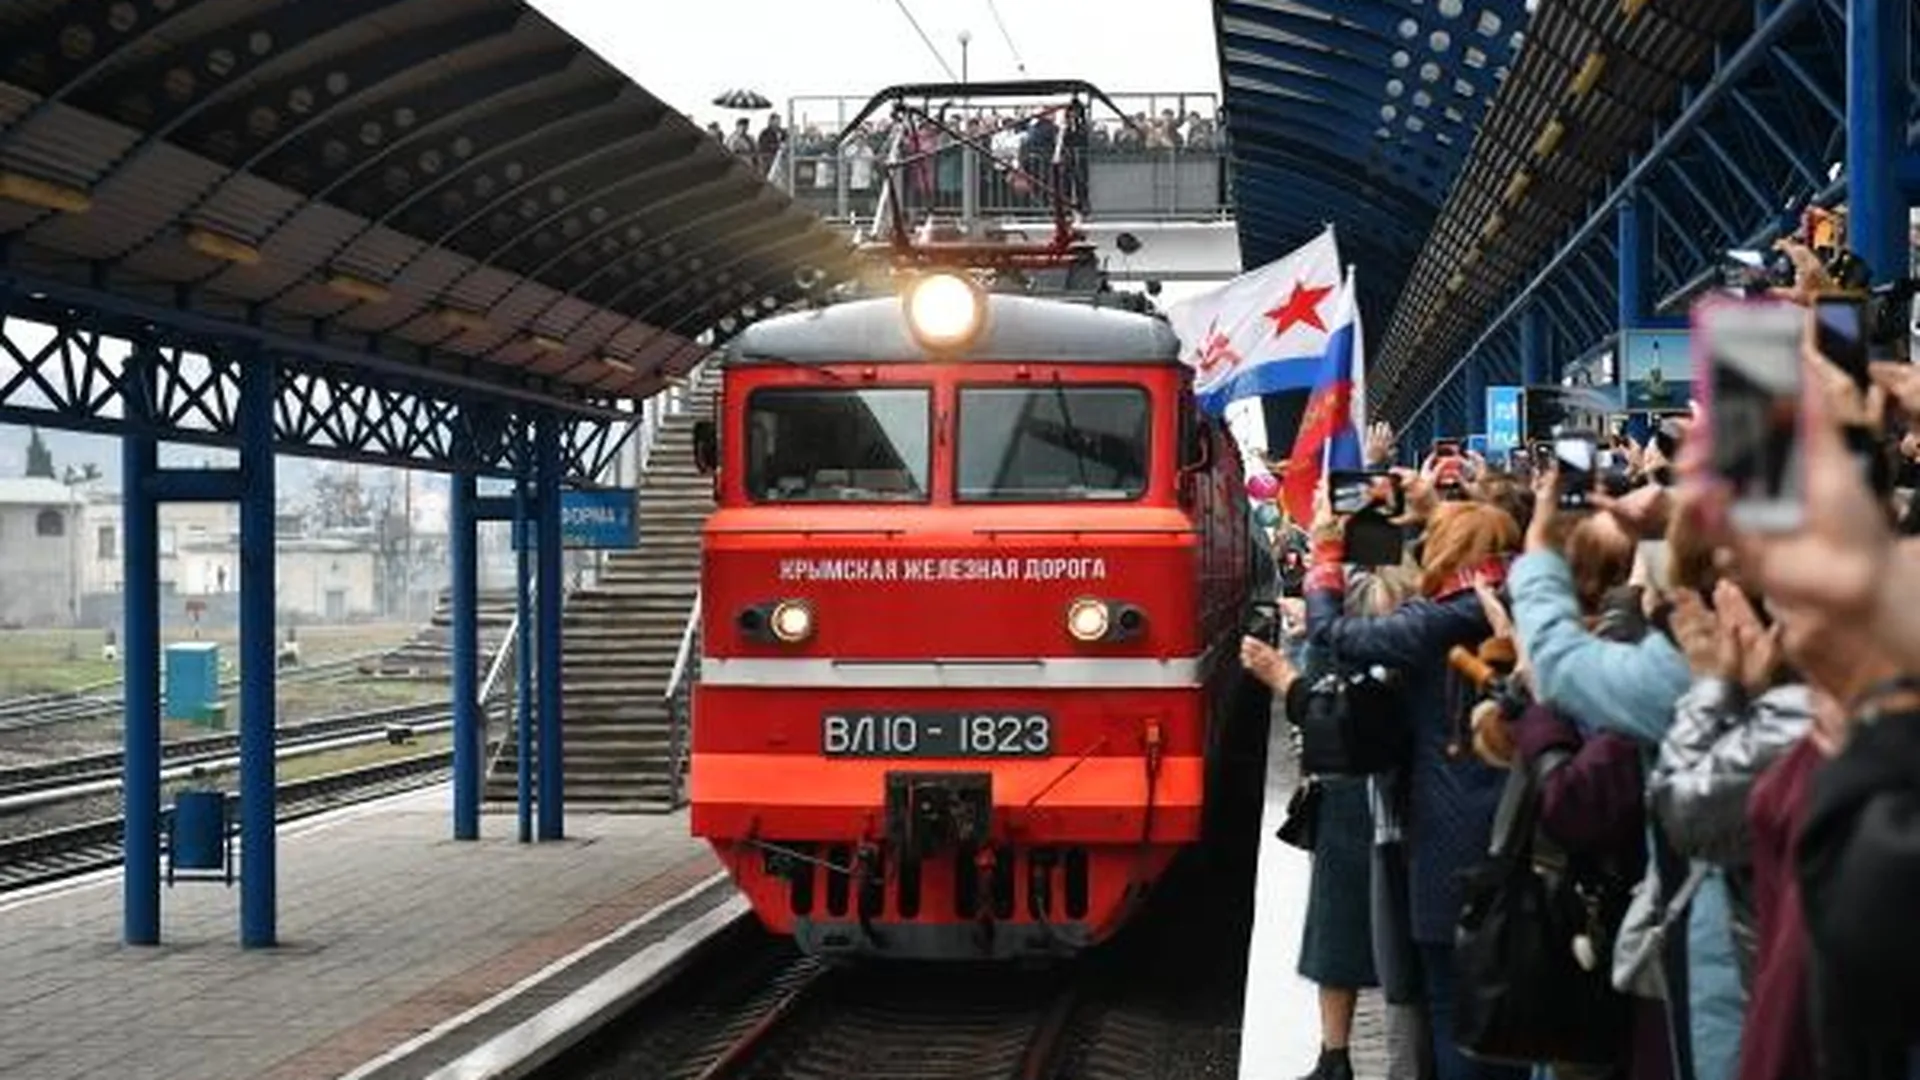 Поезд «Таврия», следующий по маршруту Санкт-Петербург — Севастополь, пребывает на вокзал Севастополя. Поезд первым прошел по Крымскому мосту и возобновил регулярные пассажирские перевозки между материком и полуостровом, которые были прерваны в 2014 году